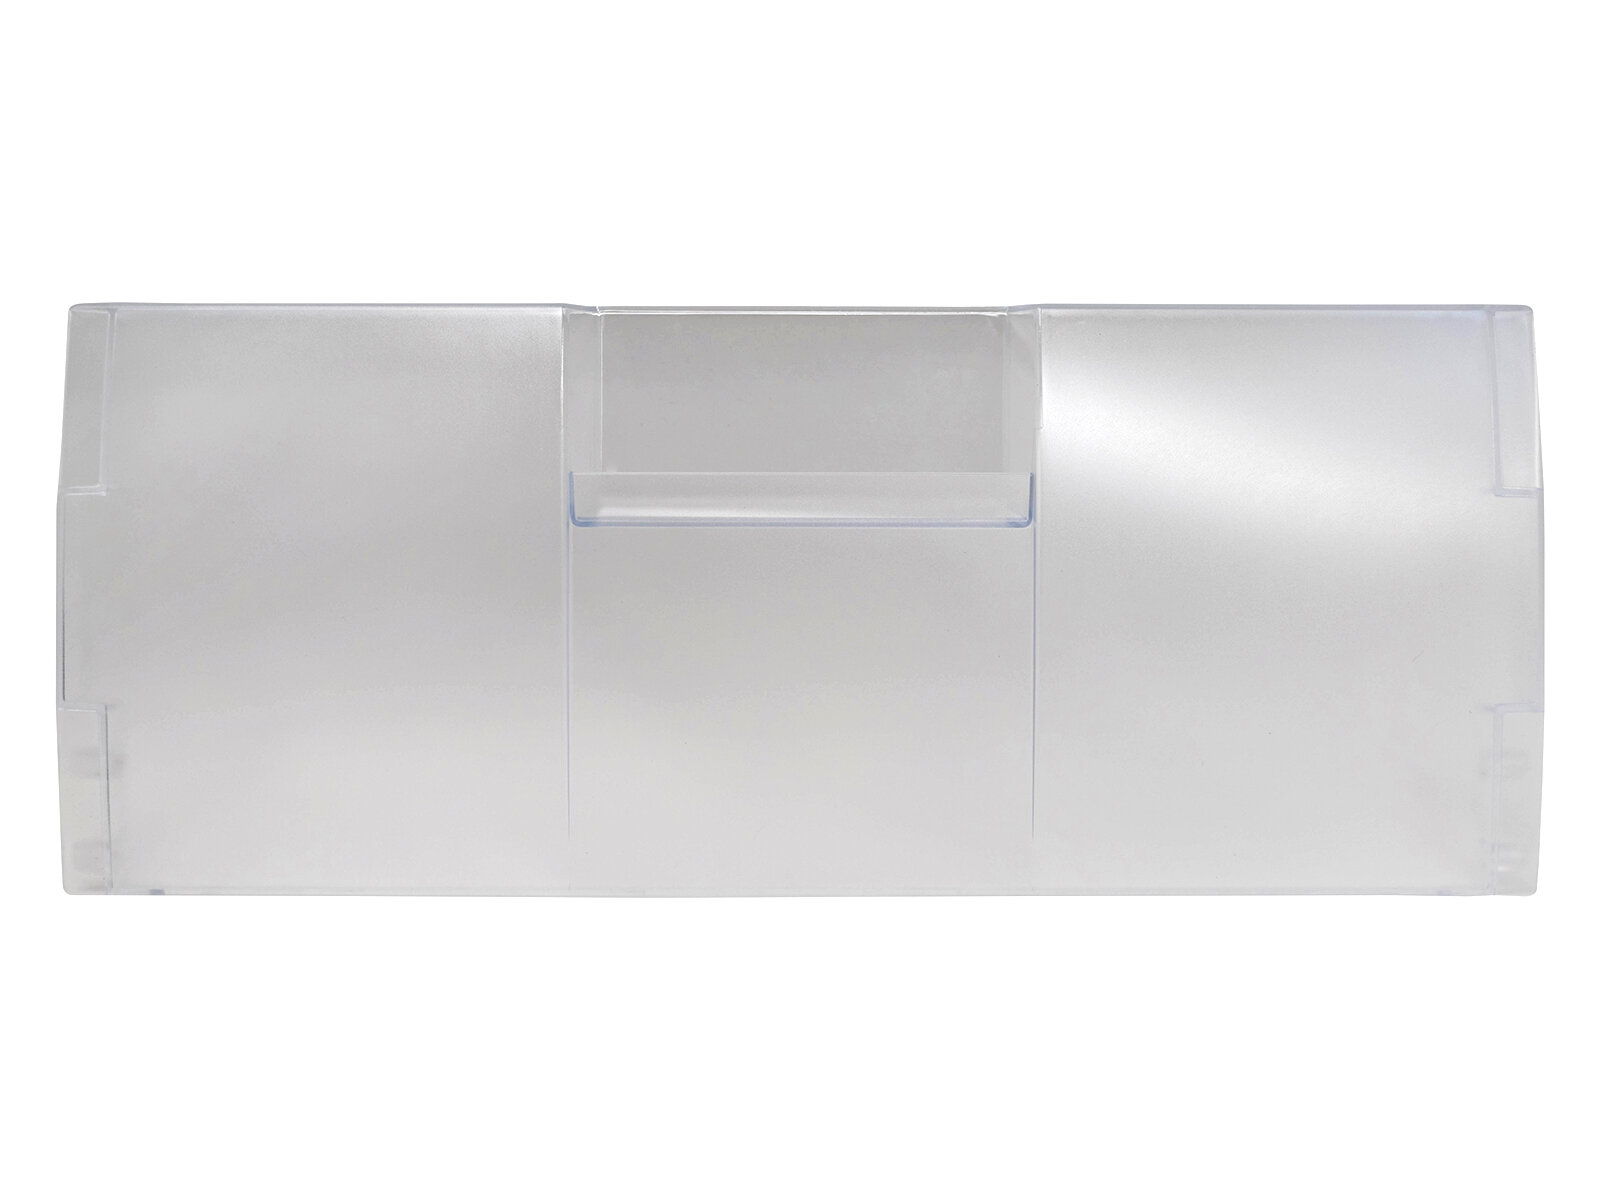 Панель верхнего ящика (откидная) морозильной камеры для холодильника Beko, Hansa, 4807850100